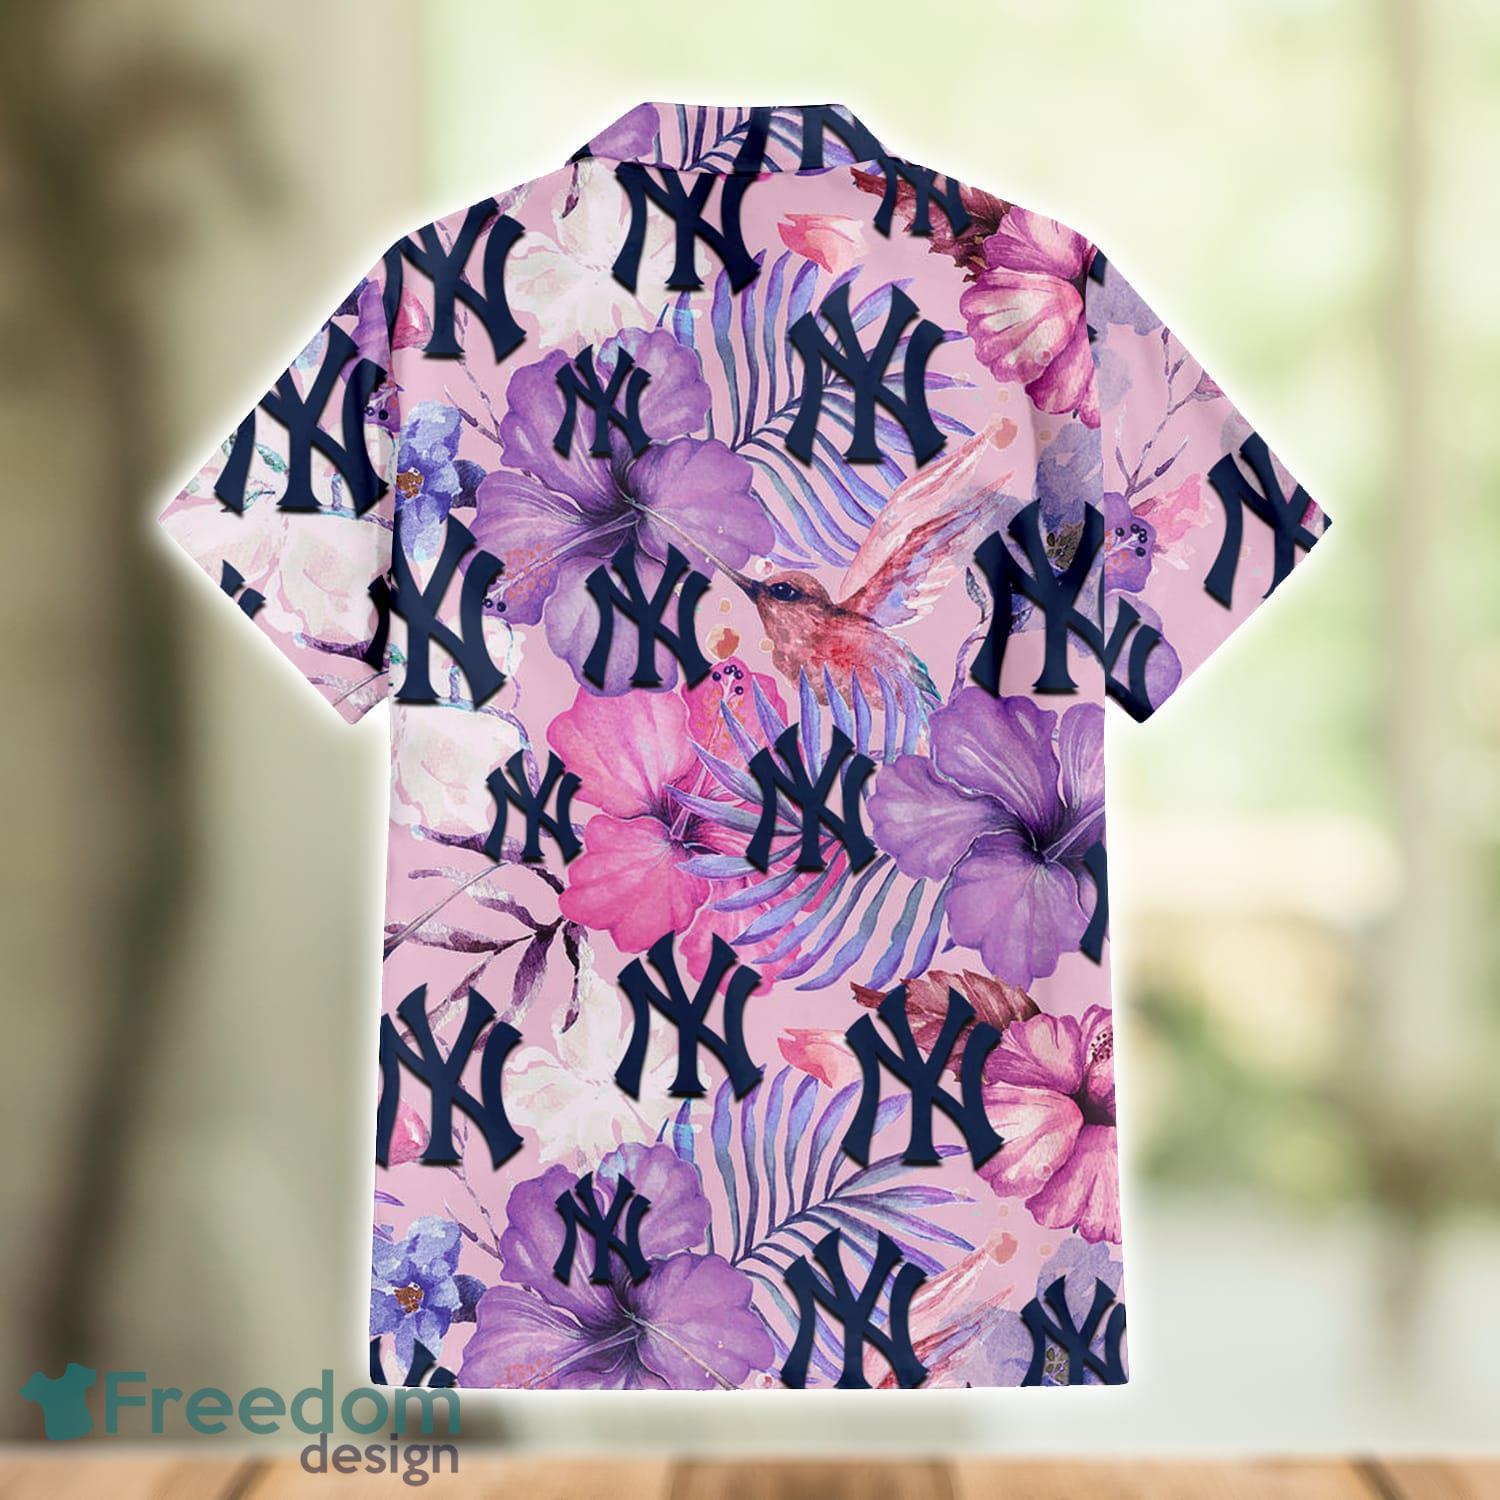 New York Yankees White Purple Hibiscus Pink Hummingbird Pink Hawaiian Shirt  For Fans - Freedomdesign